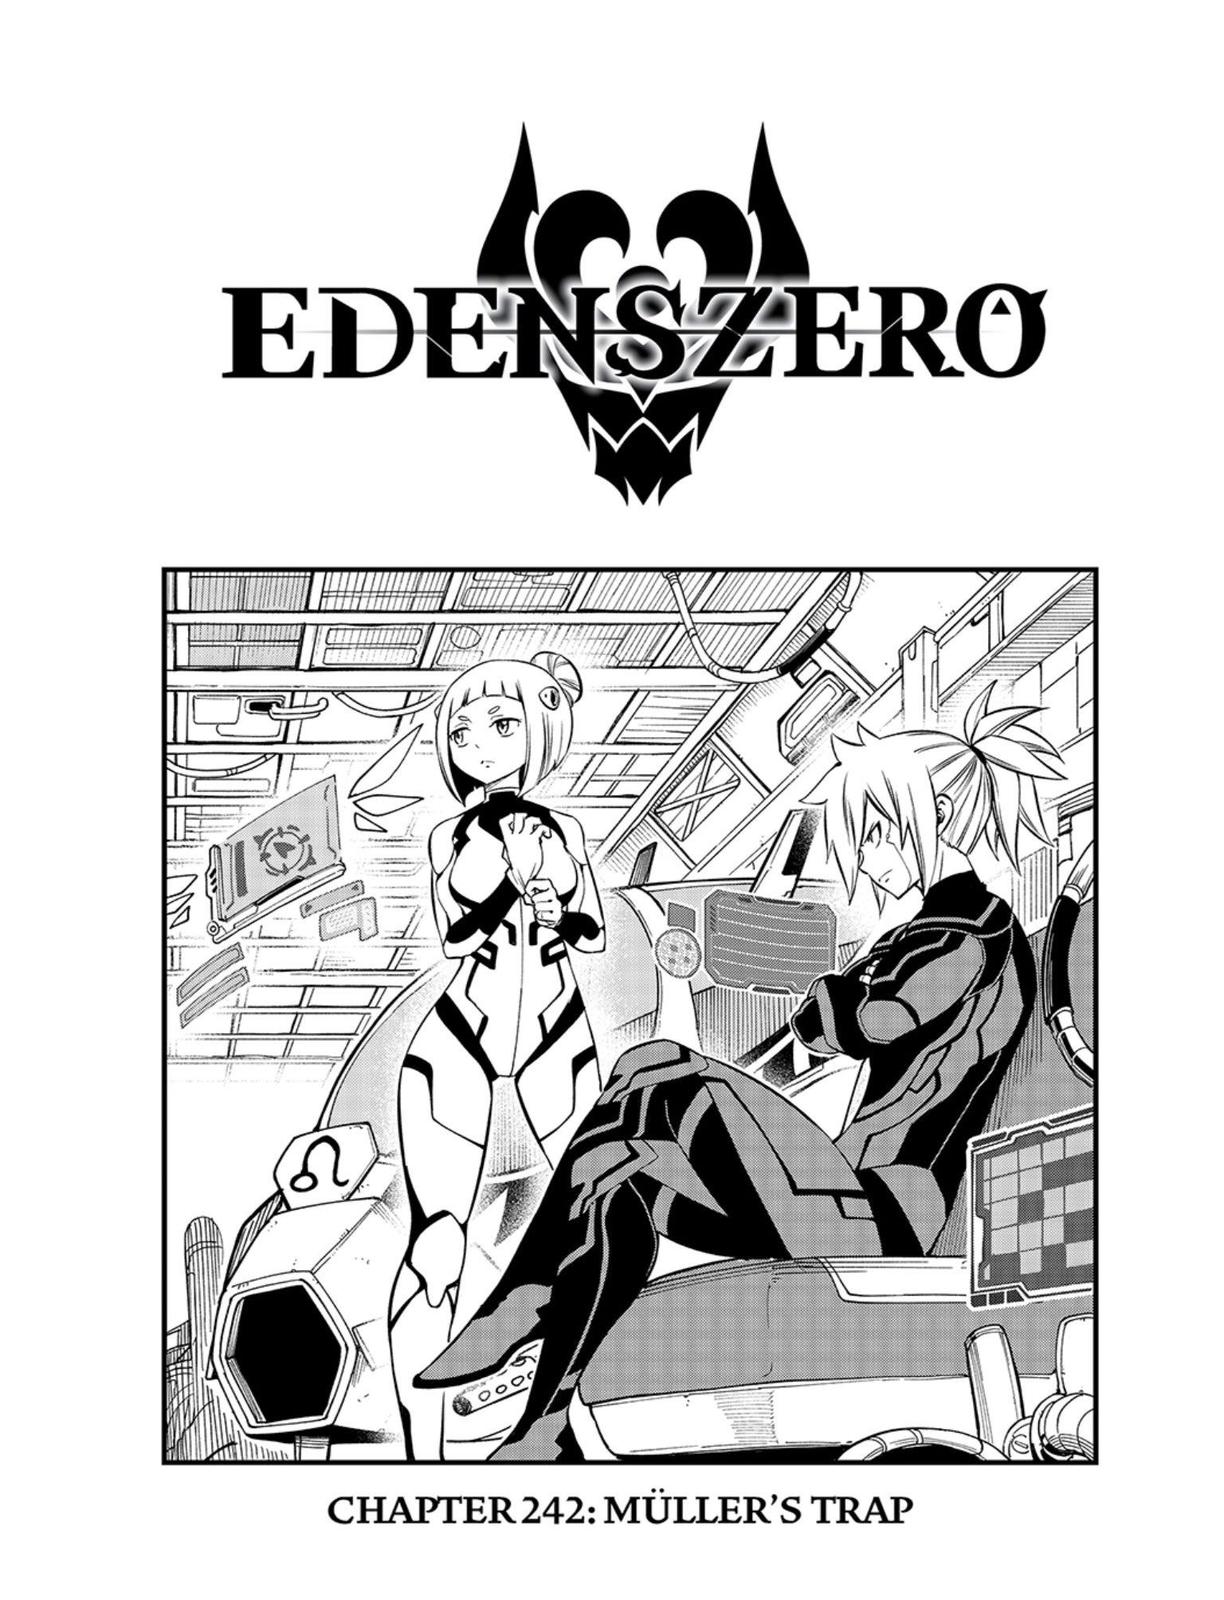 Eden zero